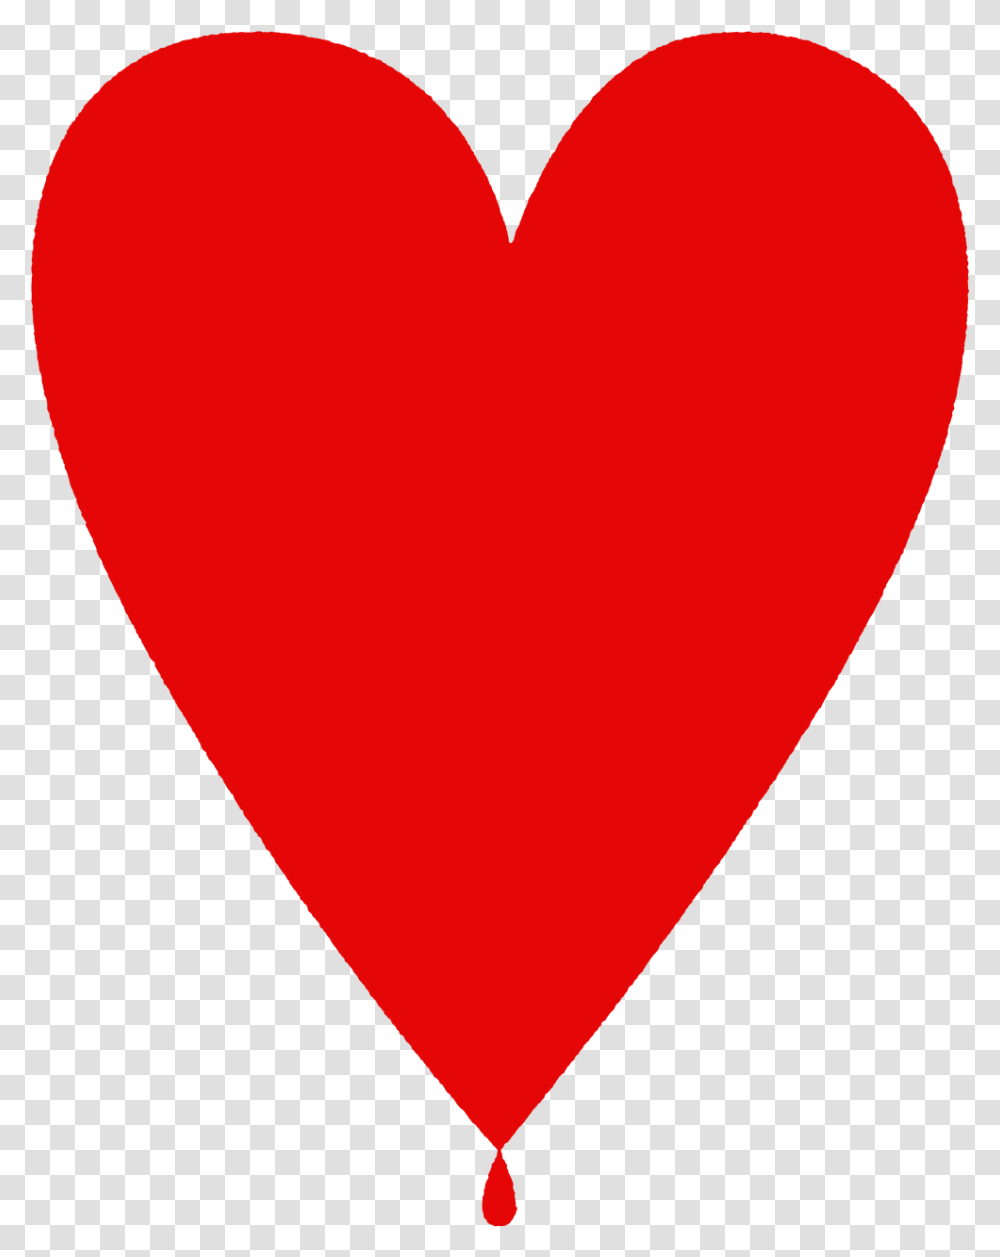 Bleeding Heart Love Heart, Balloon Transparent Png